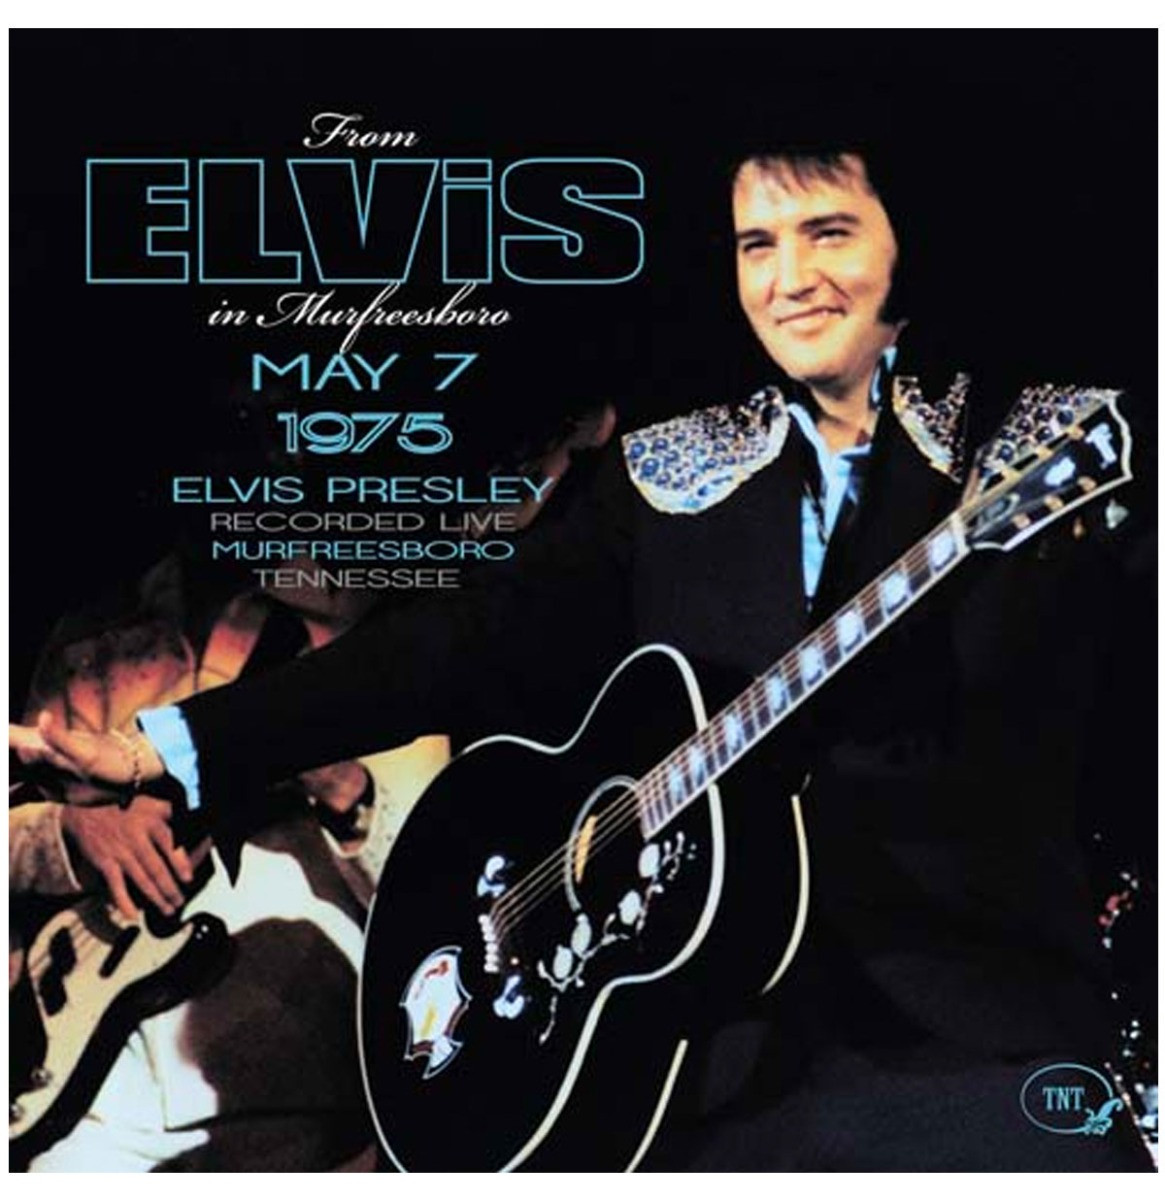 Elvis Presley - From Elvis In Murfreesboro CD May 7 1975